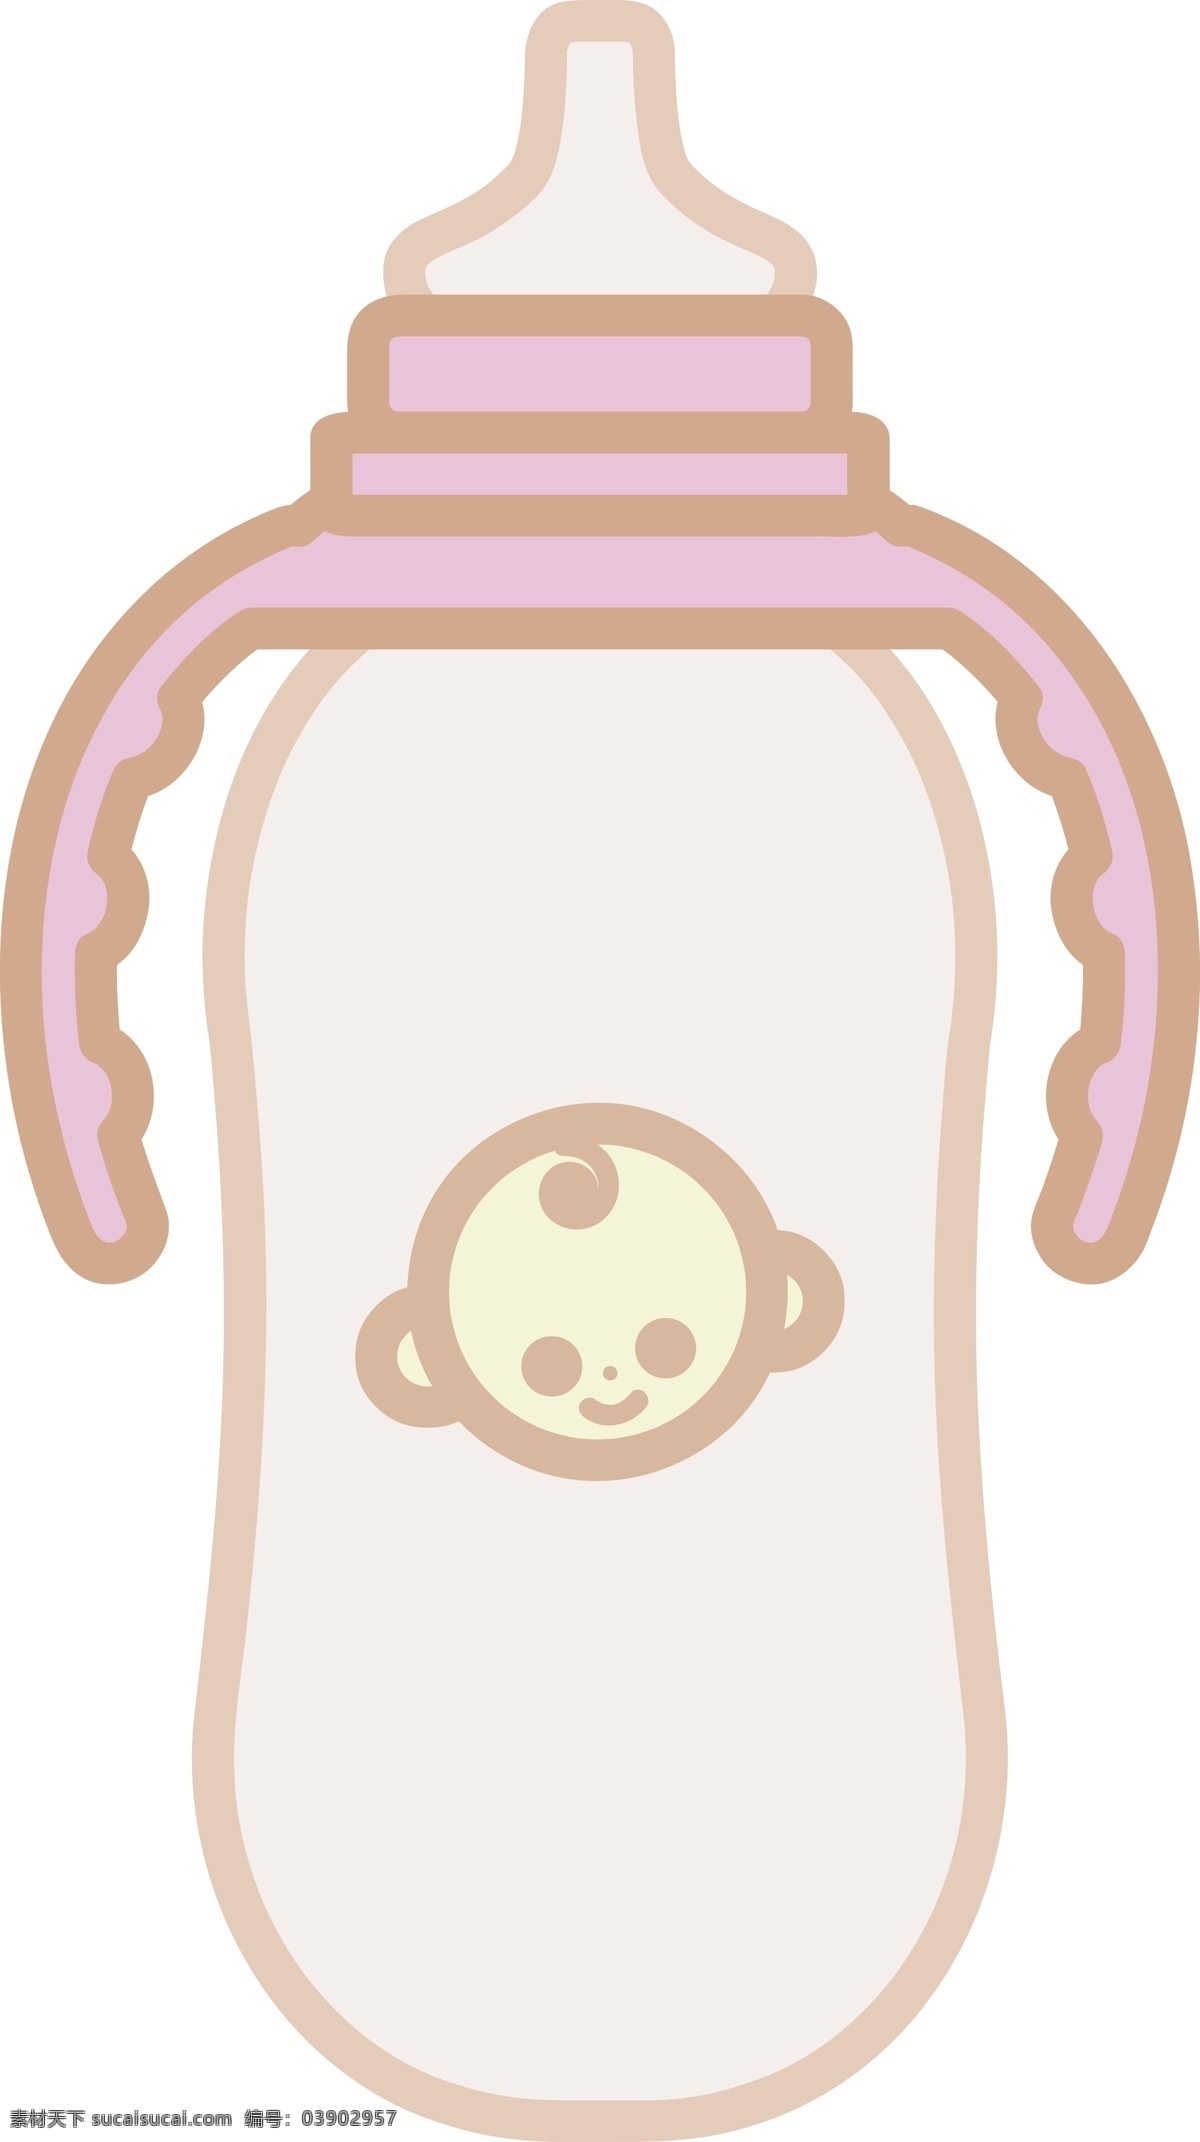 婴儿 奶瓶 装饰 插画 婴儿奶瓶 漂亮的奶瓶 可爱的奶瓶 创意奶瓶 立体奶瓶 精美奶瓶 奶瓶装饰 奶瓶插画